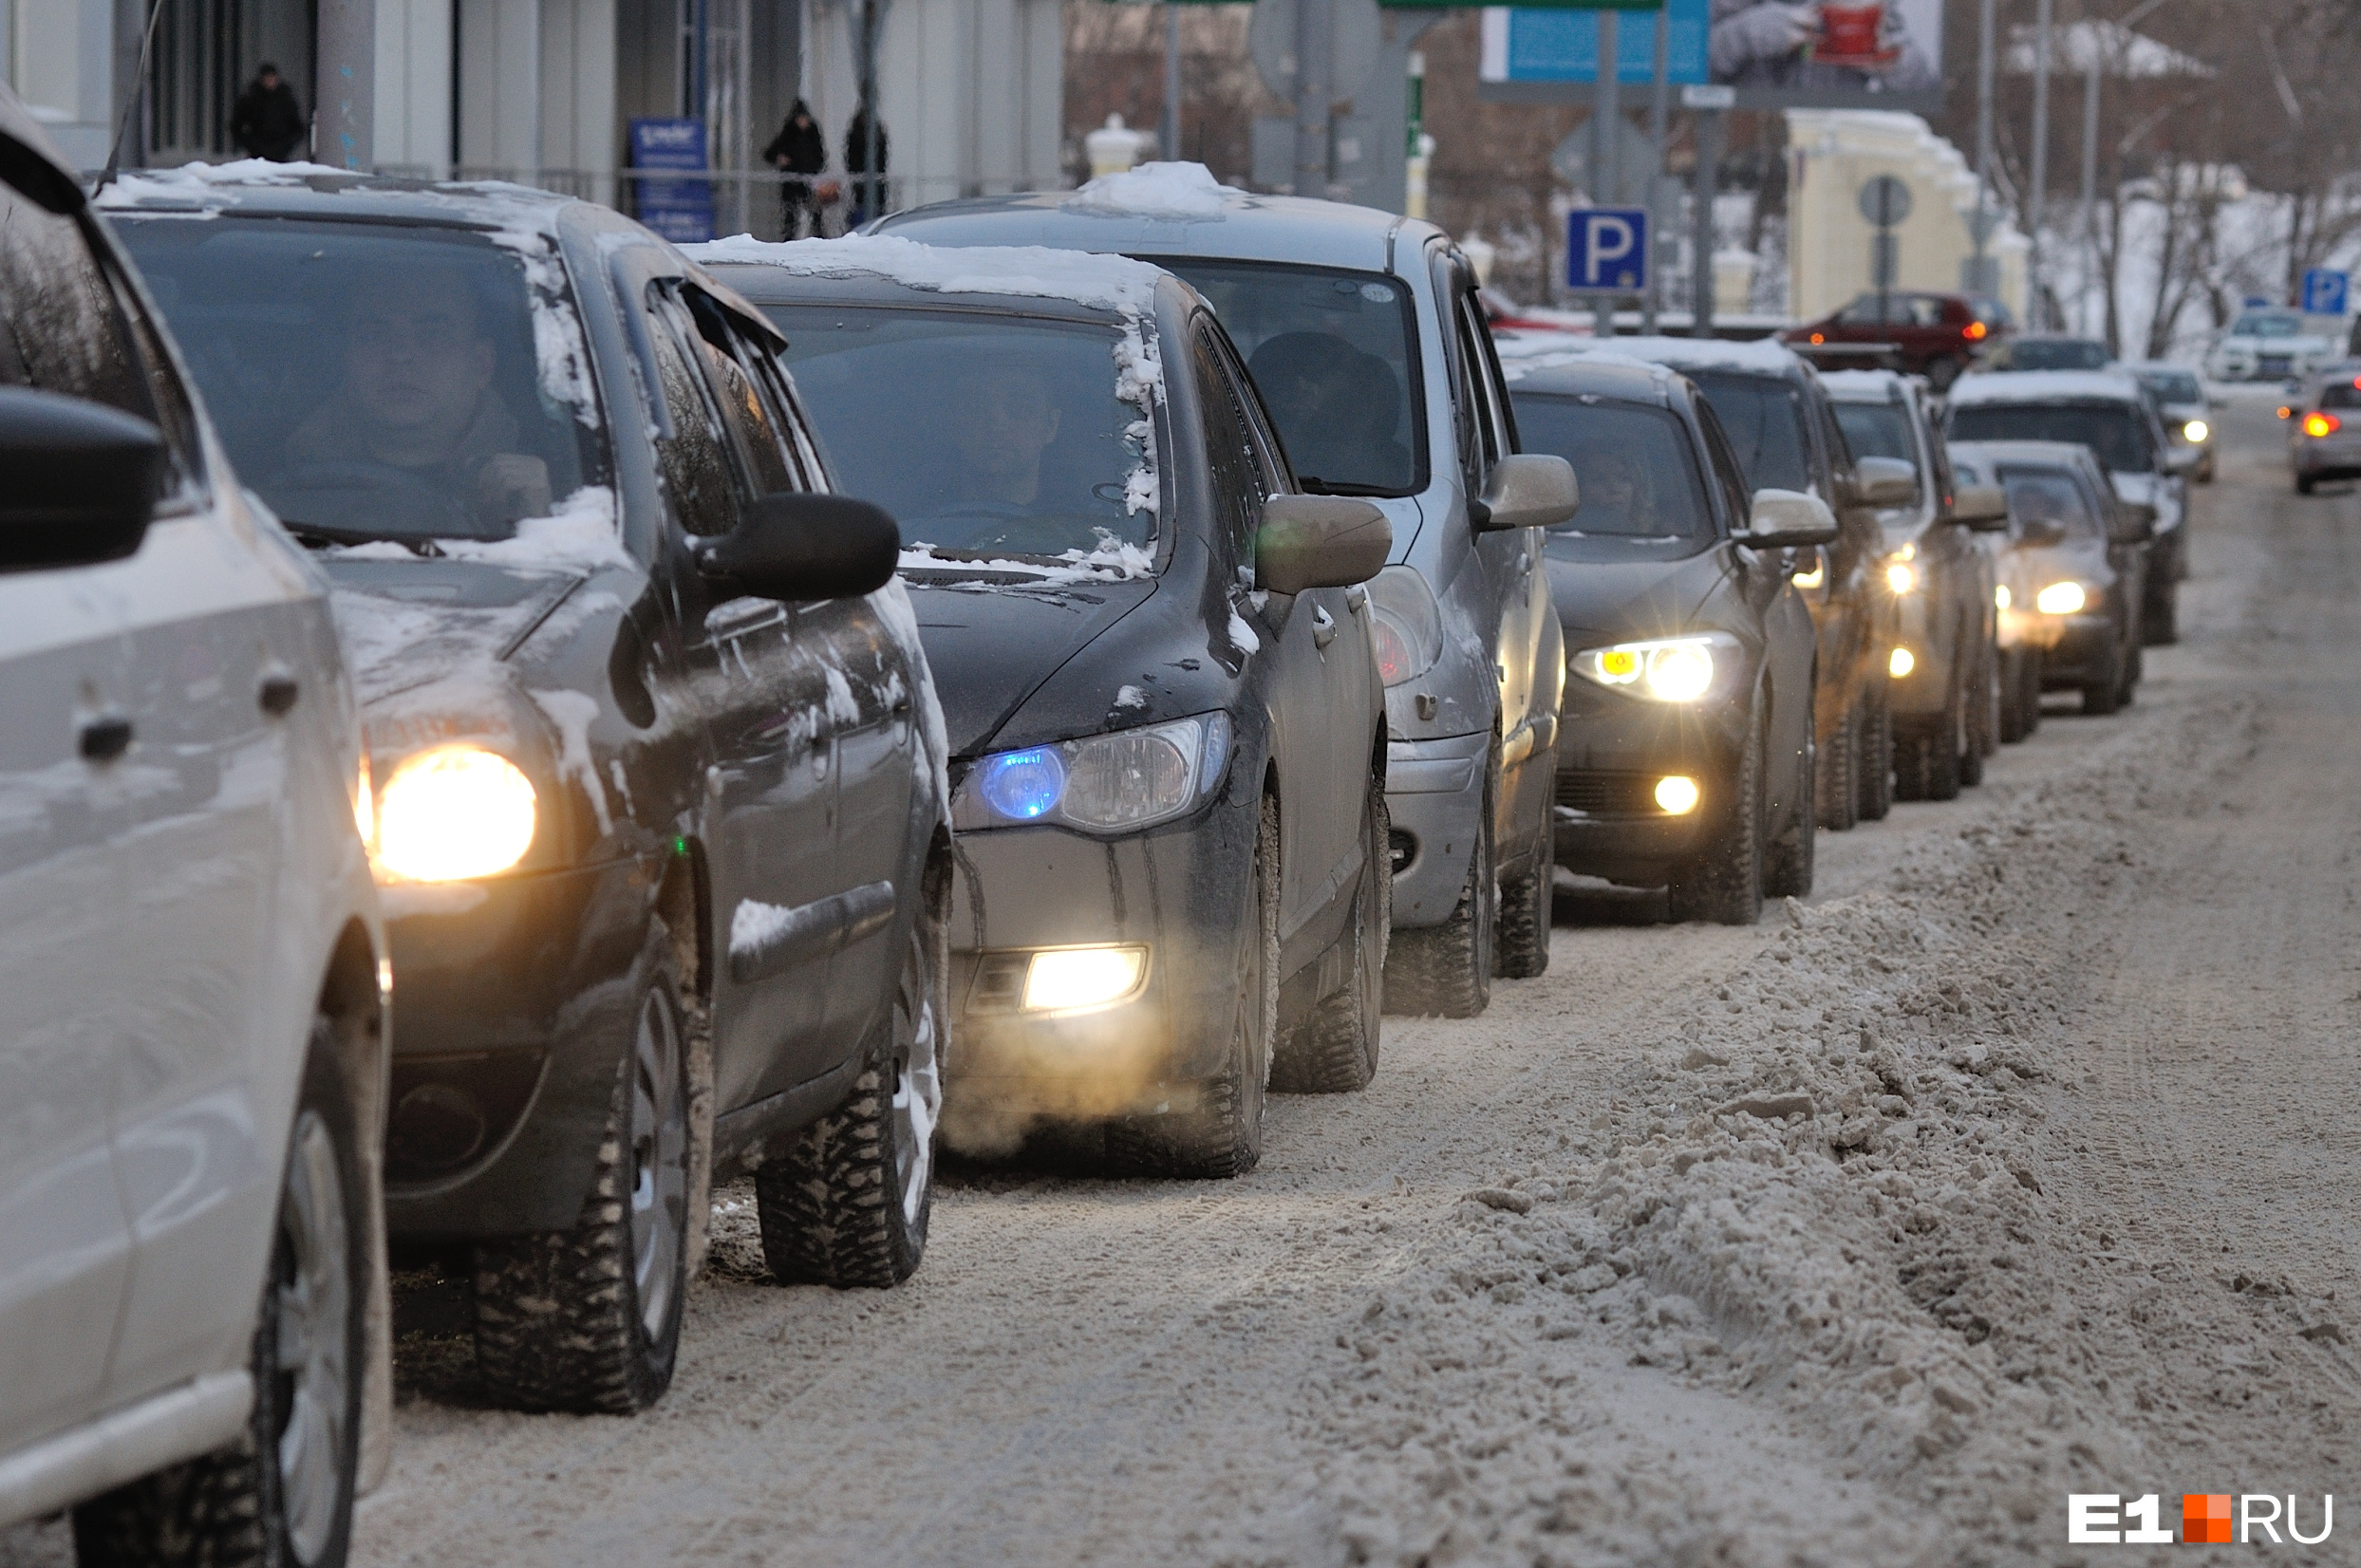 В Екатеринбурге — вновь рекордные пробки. Транспорт встал, водители психуют